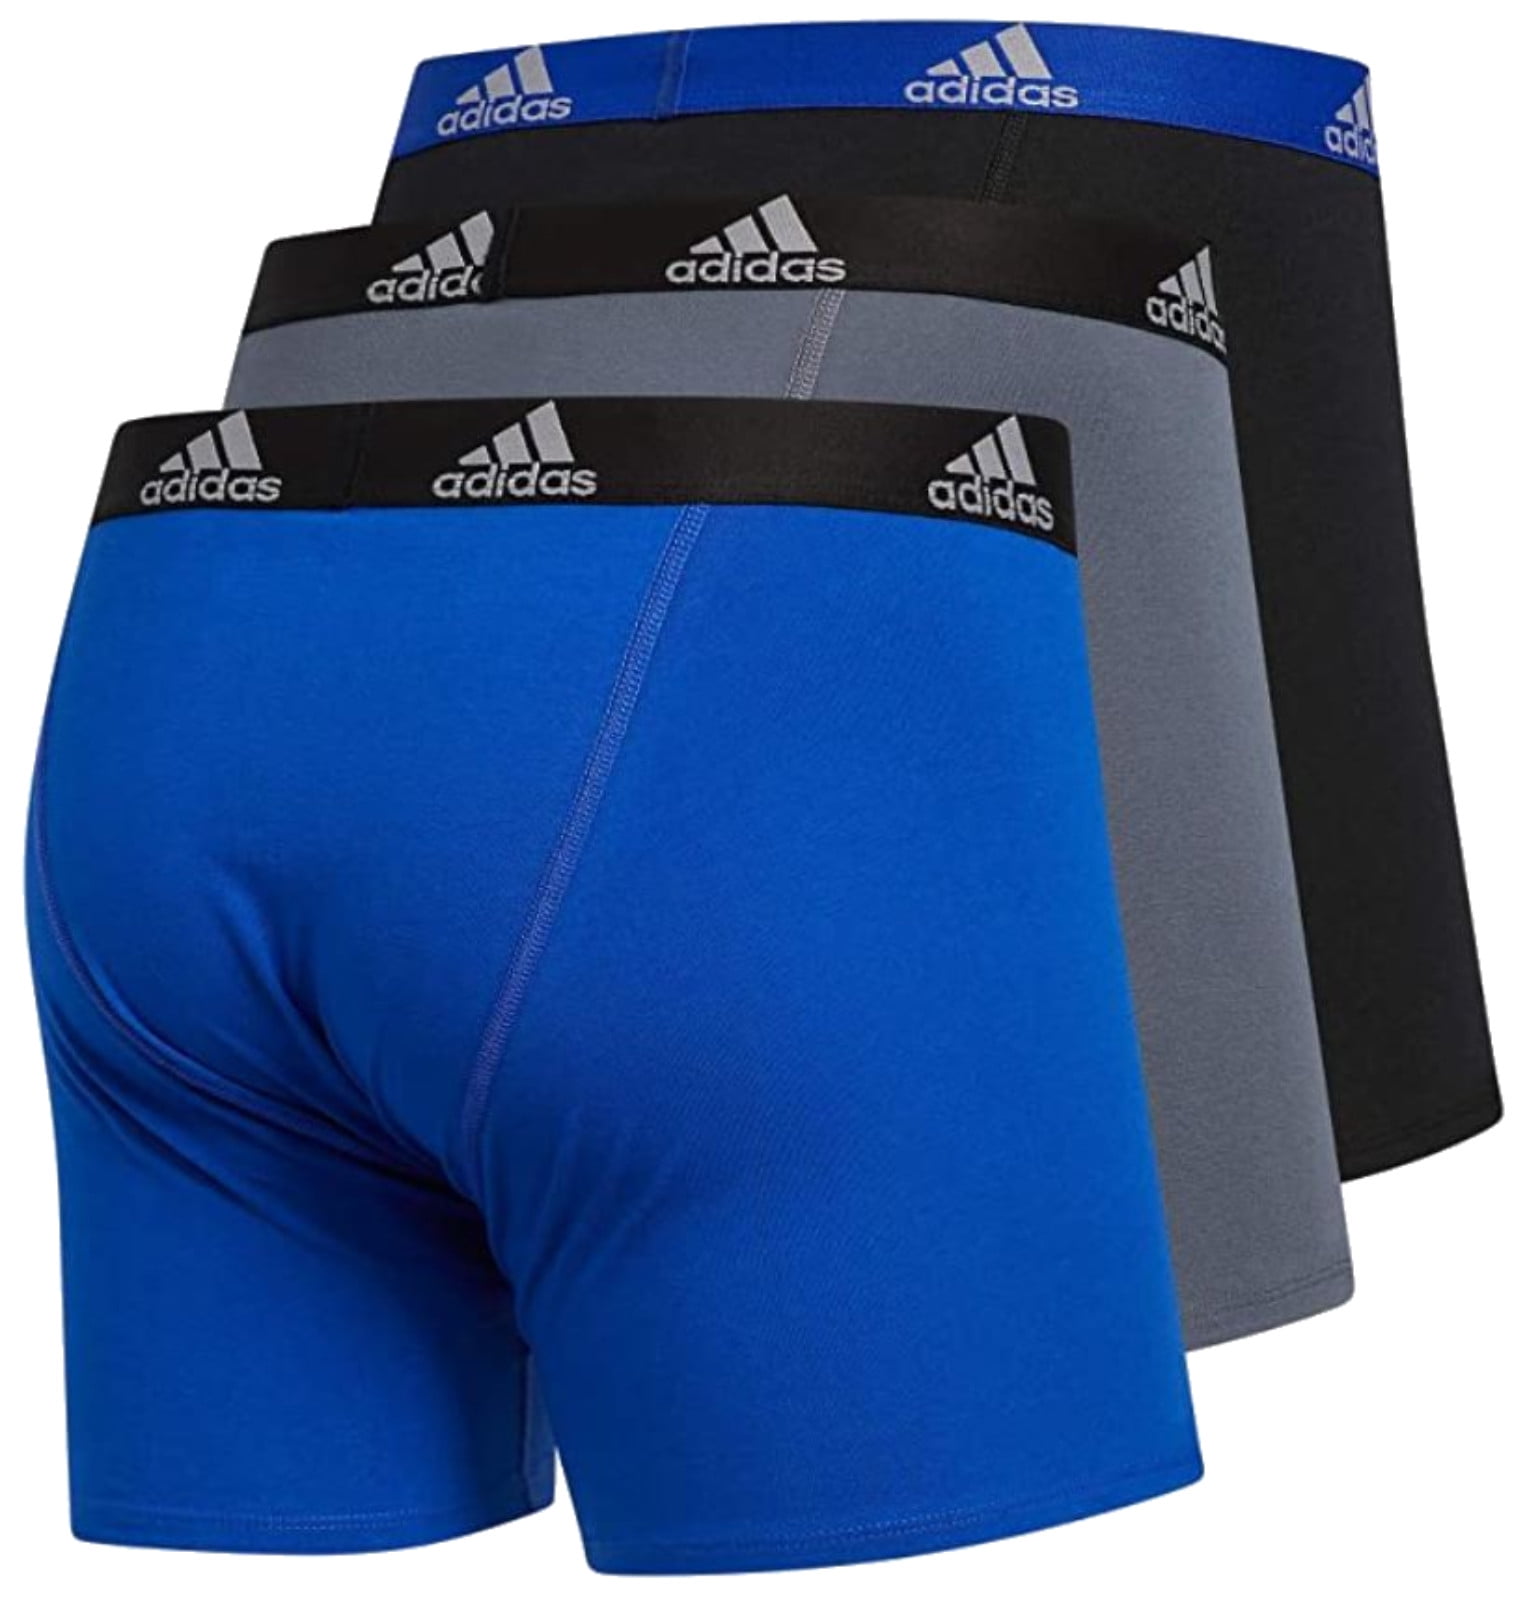 Adidas Men's Stretch Cotton Boxer Brief Underwear (3-Pack) -  Blue/Grey/Black (S)